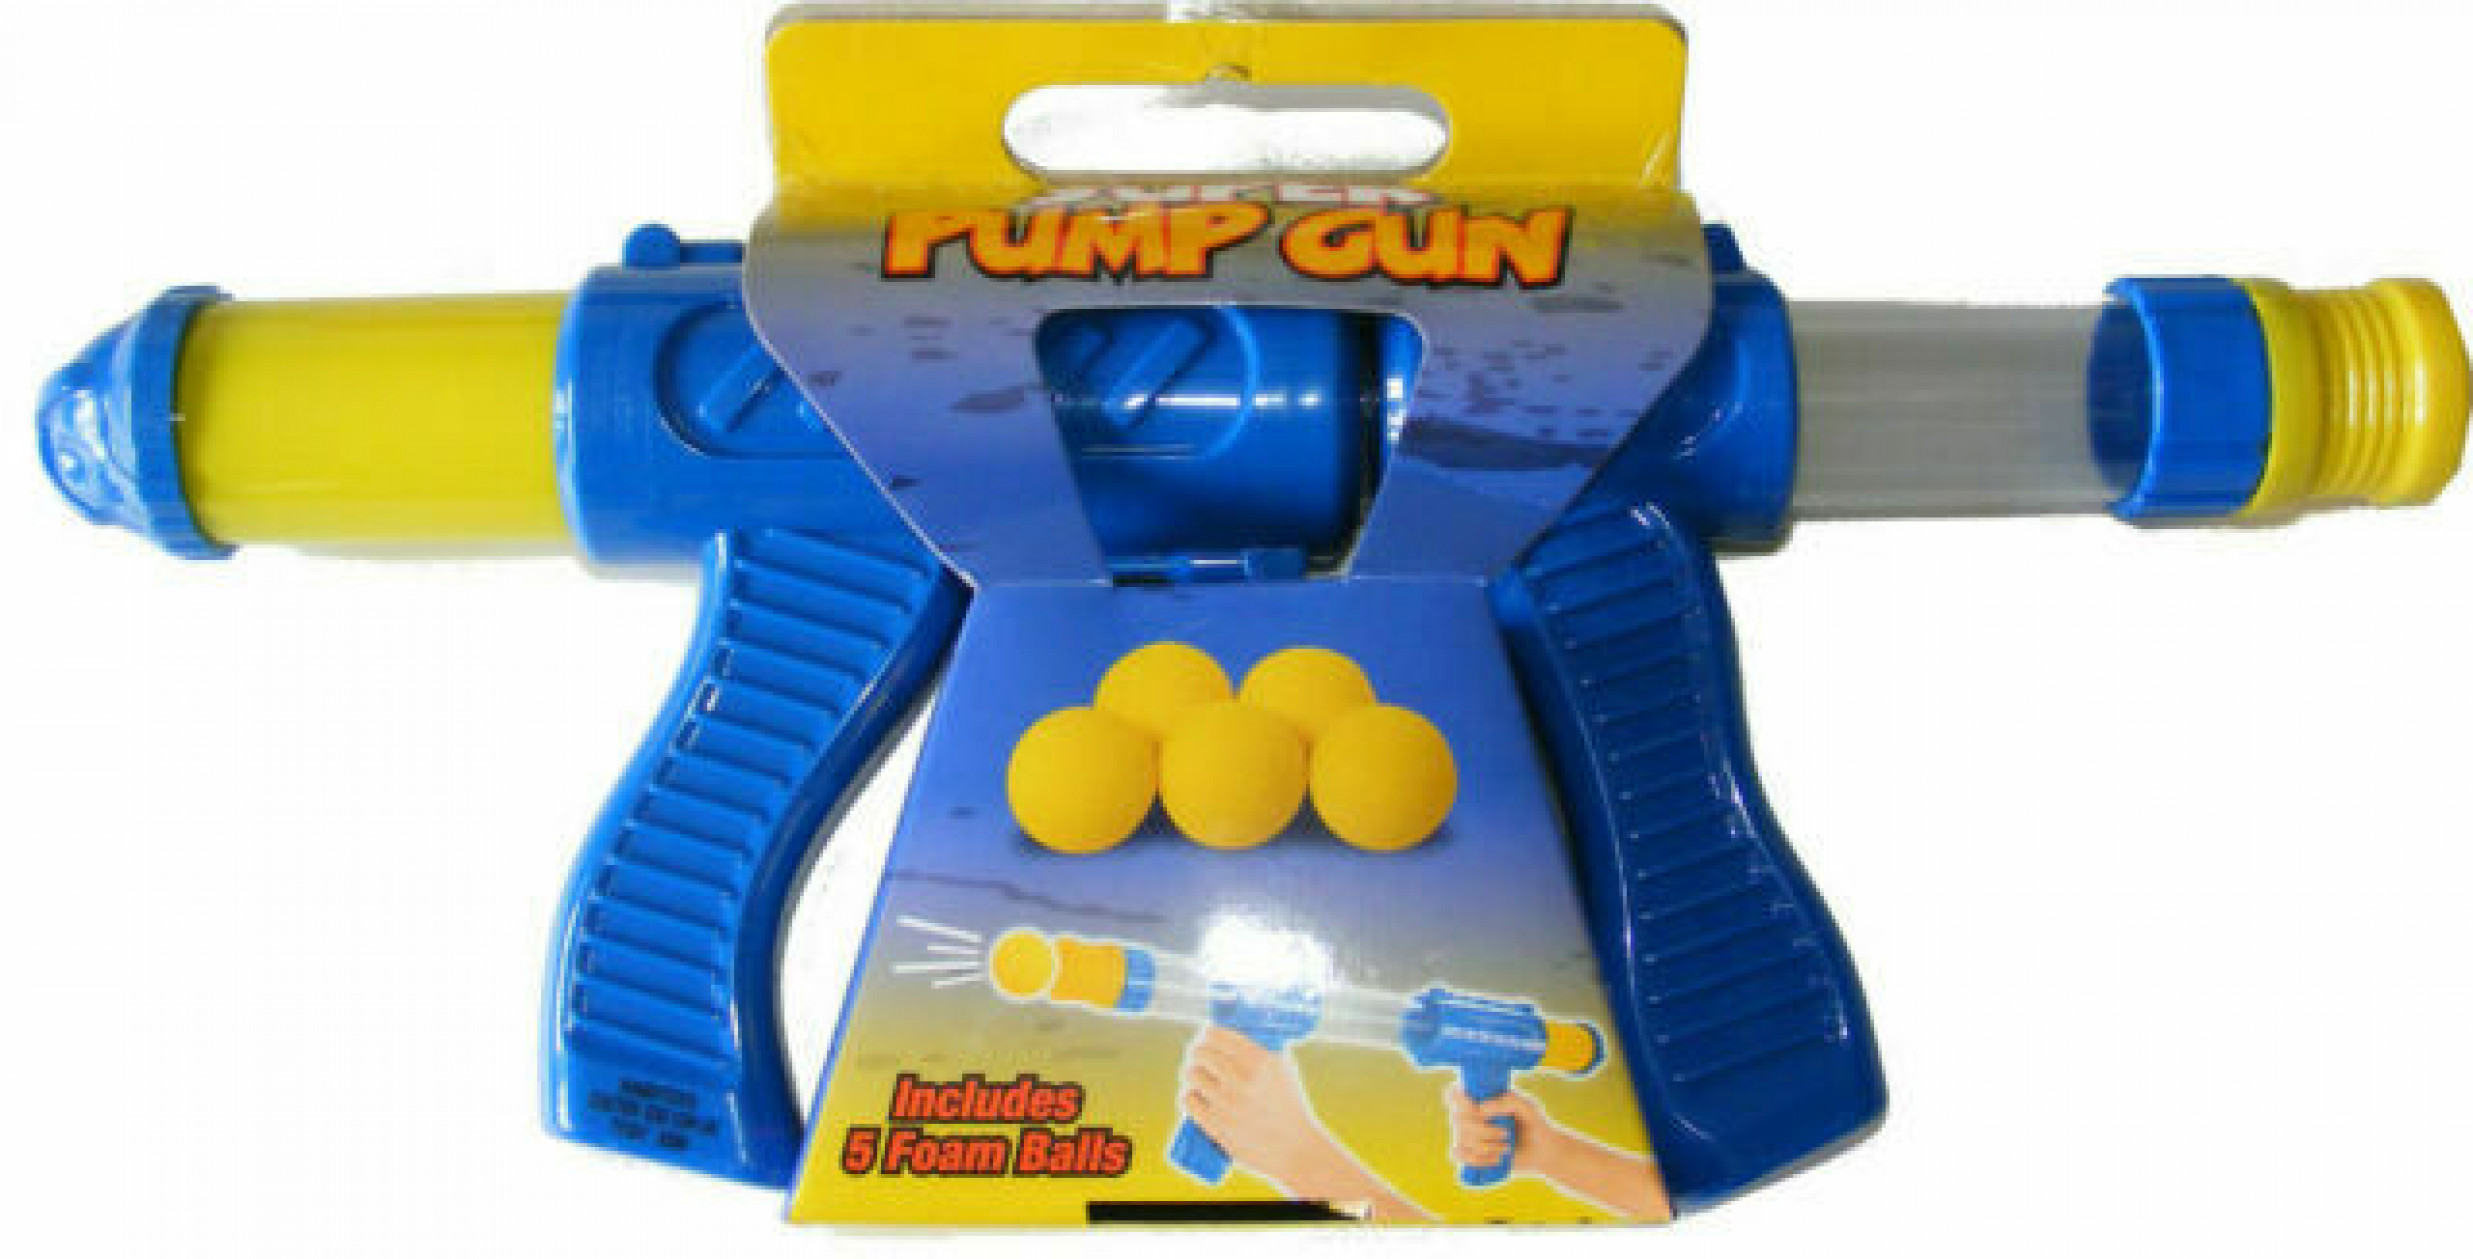 Kandy Toys Super Pump Gun